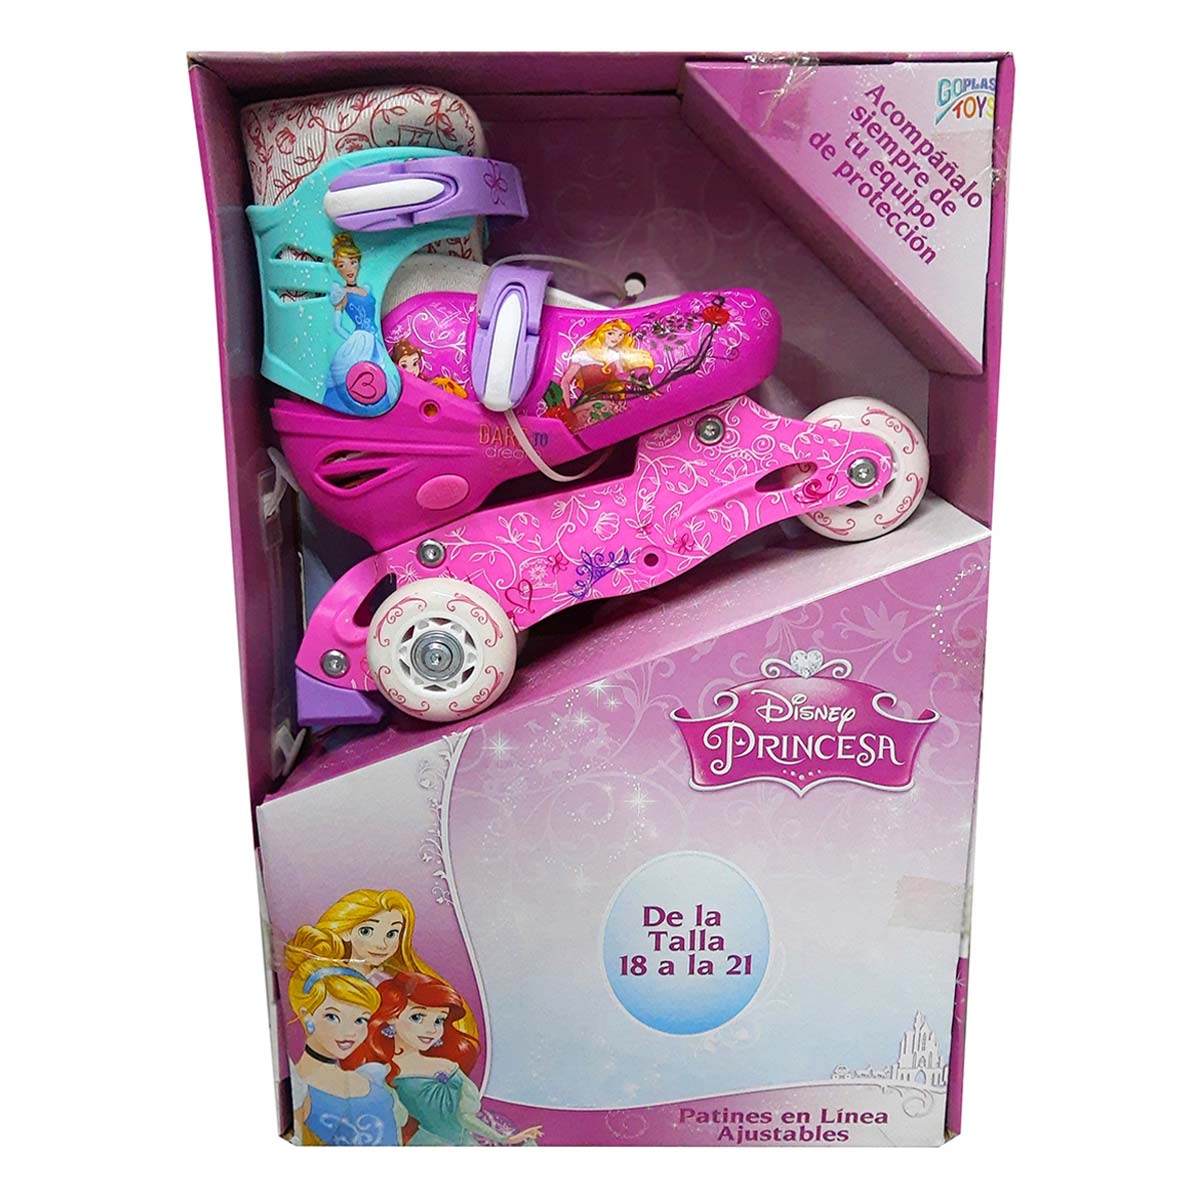 Patines en línea The Baby Shop Together Princesas para niña